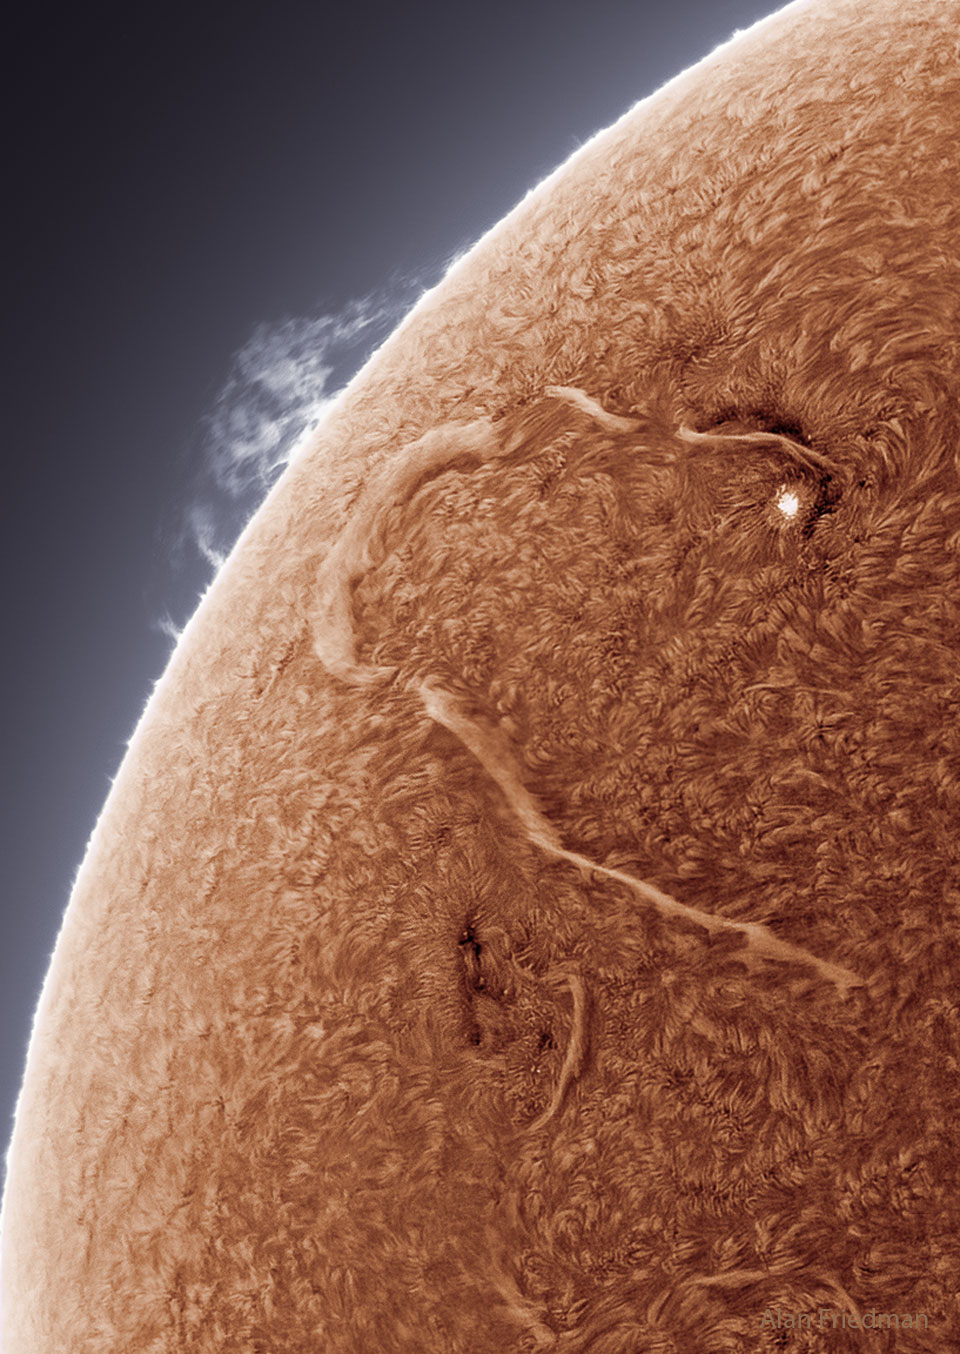 特色图像显示了一条长长的暗条蜿蜒穿过太阳表面。请参阅说明以获取更多详细信息。